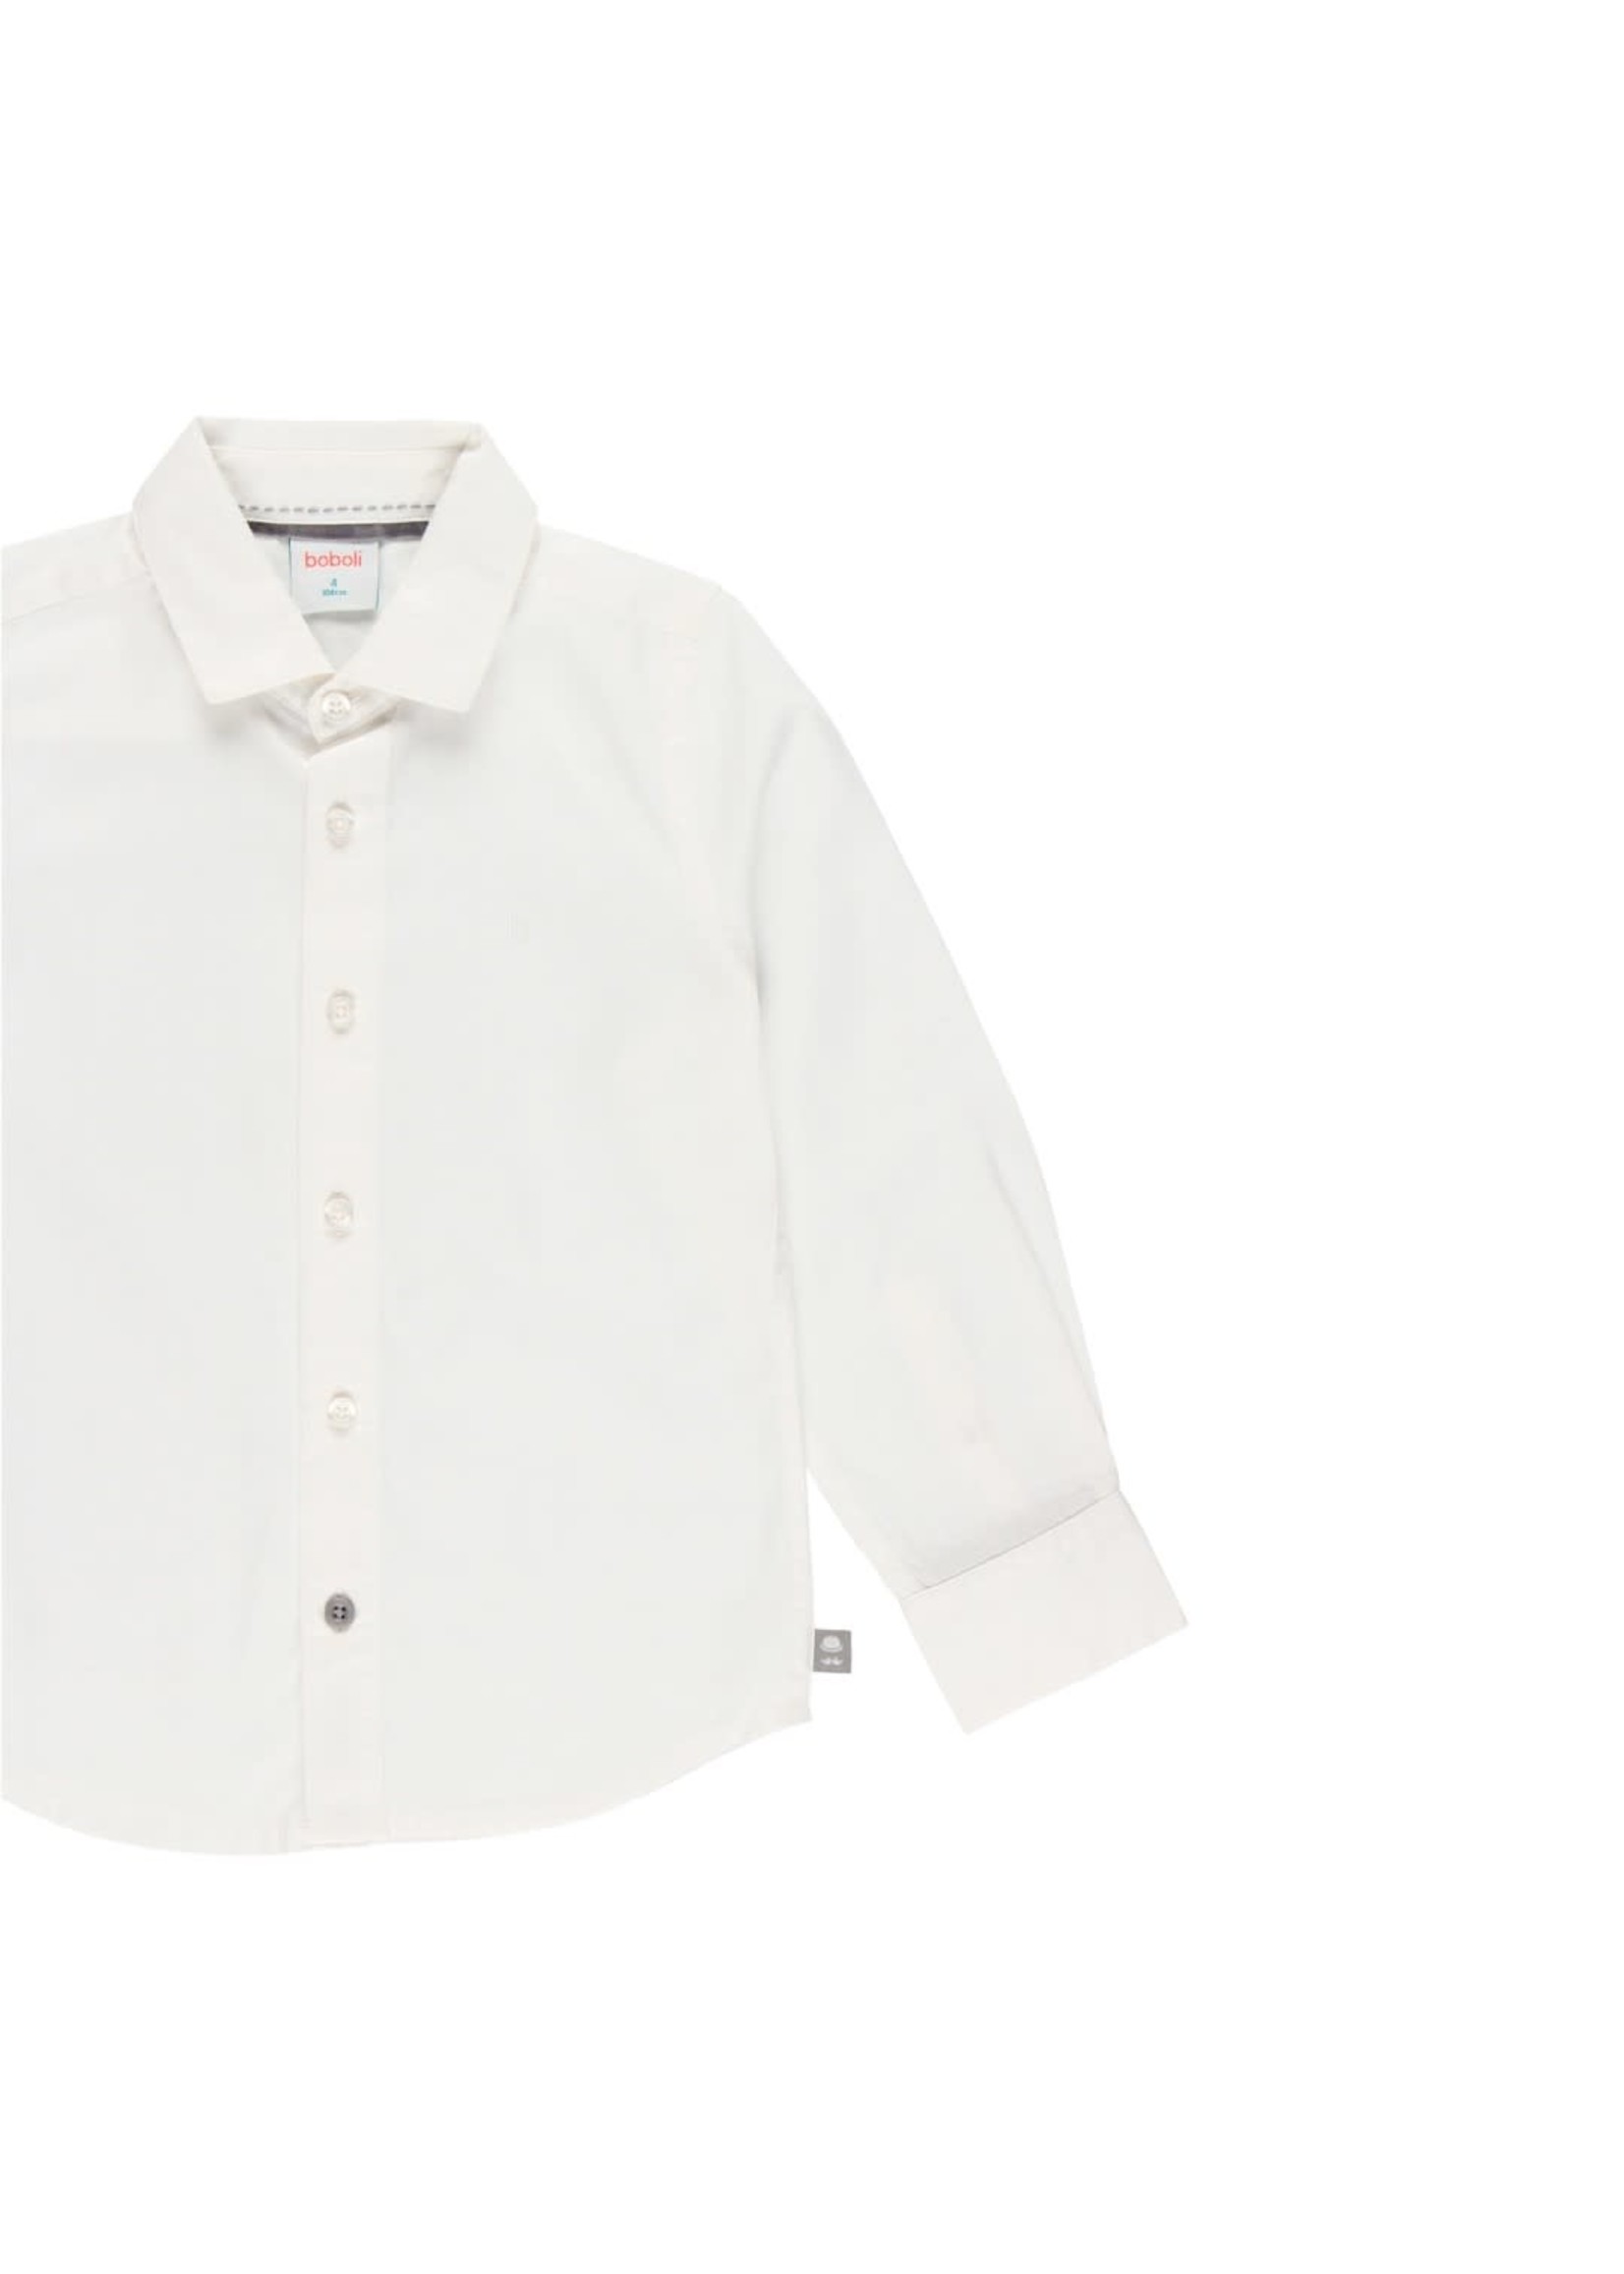 Boboli Shirt fantasy for boy WHITE 733003